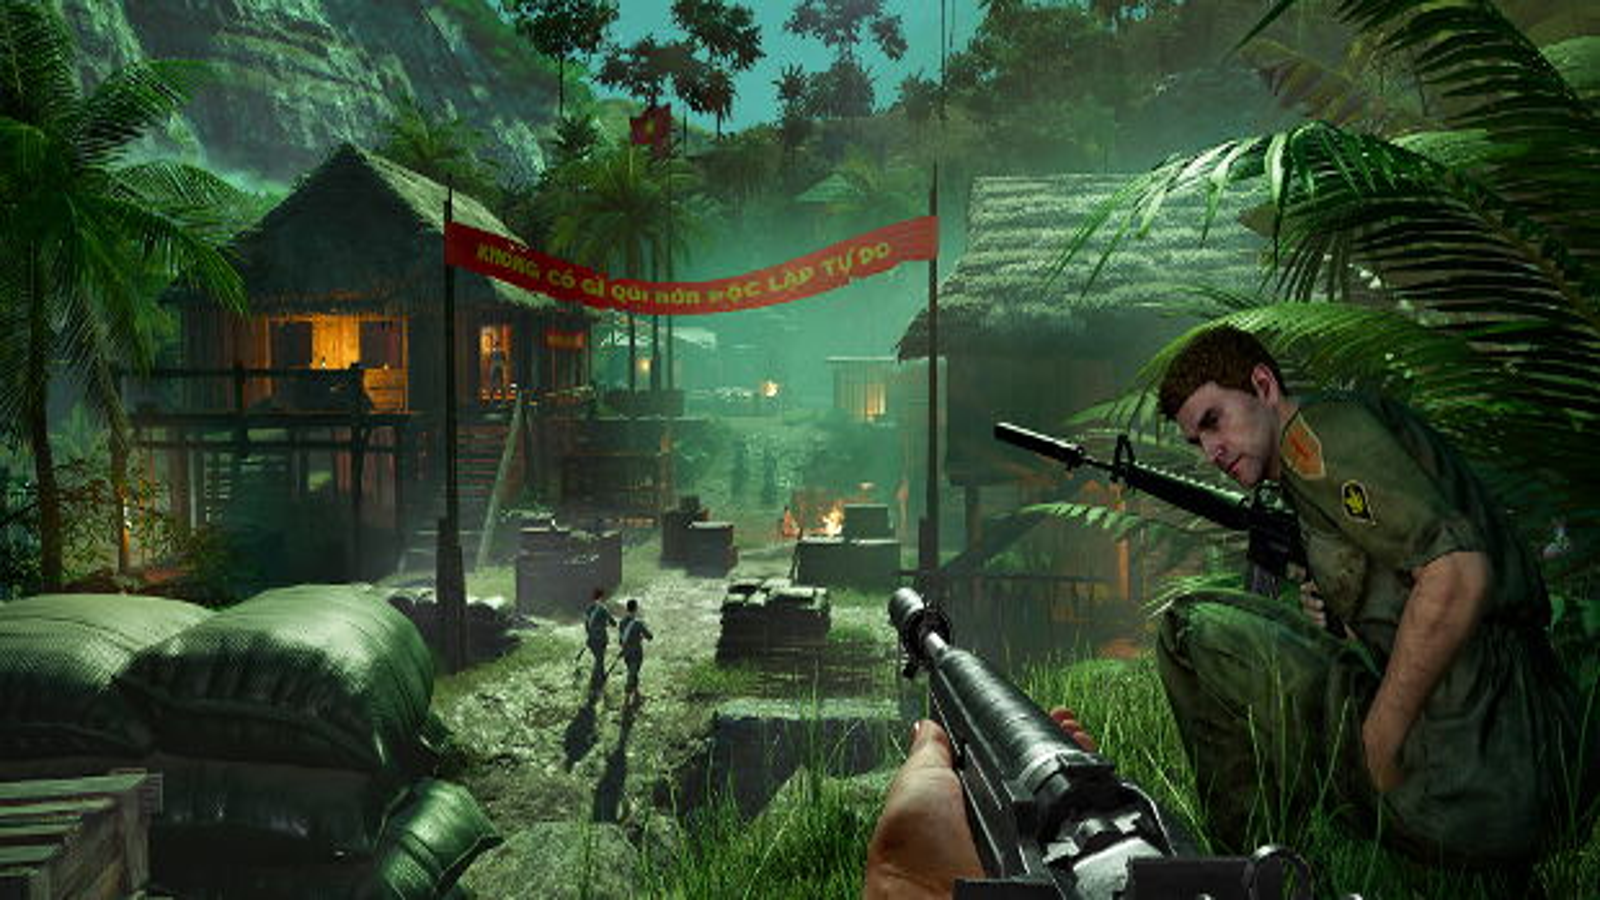 Far Cry 5 - GameSpot